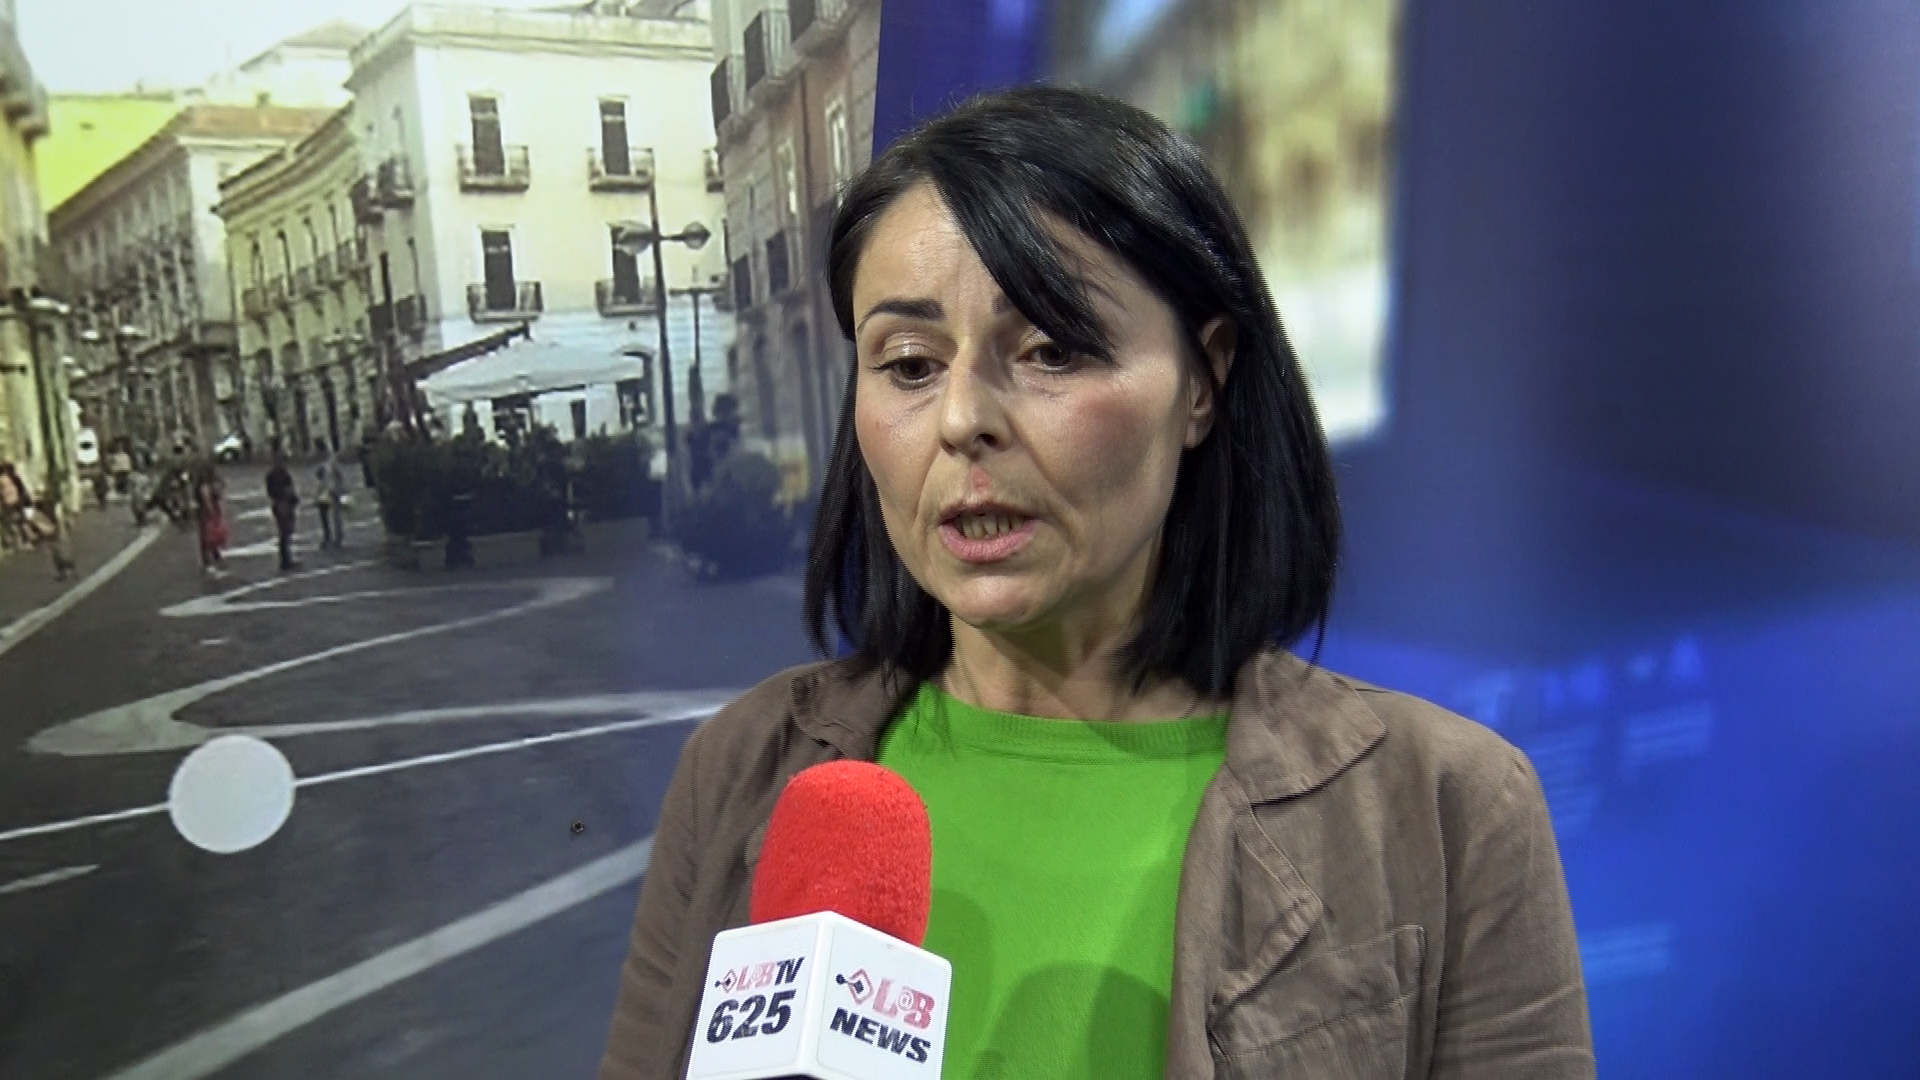 Benevento| Rita Maio: ritiro delibera riclassificazione aree cittadine confusione amministrativa